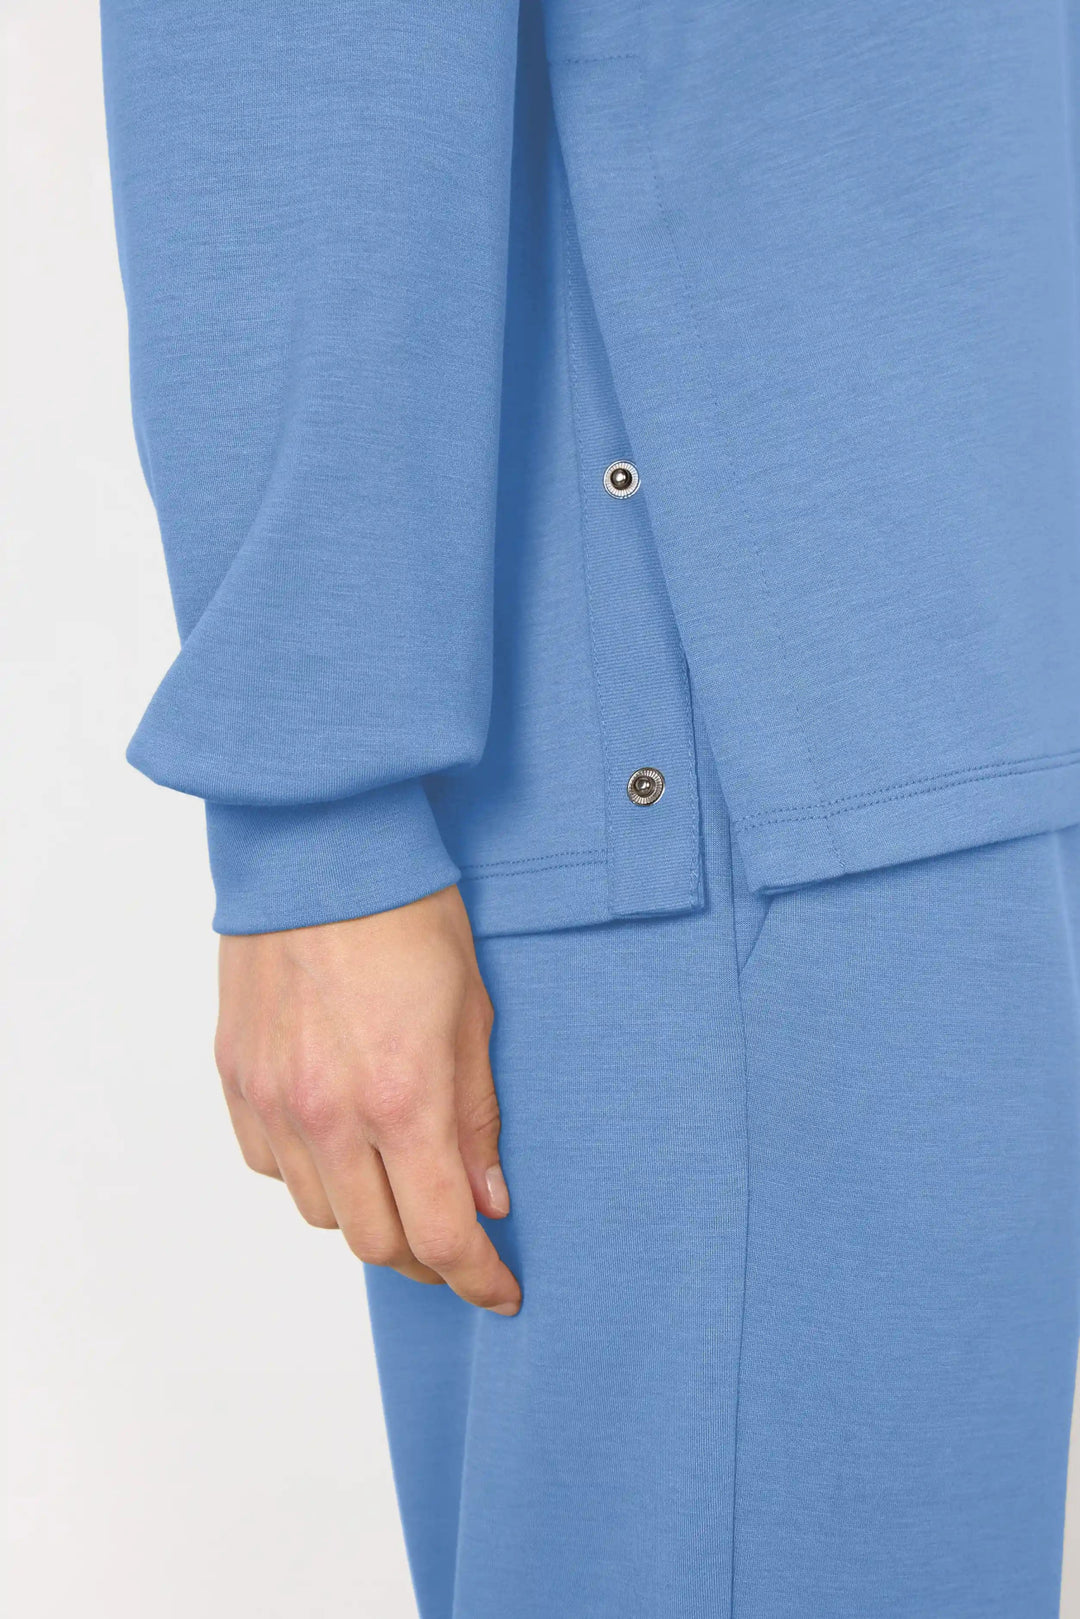 Sc-Banu 134 bright blue | Skjorter og bluser | Smuk - Dameklær på nett